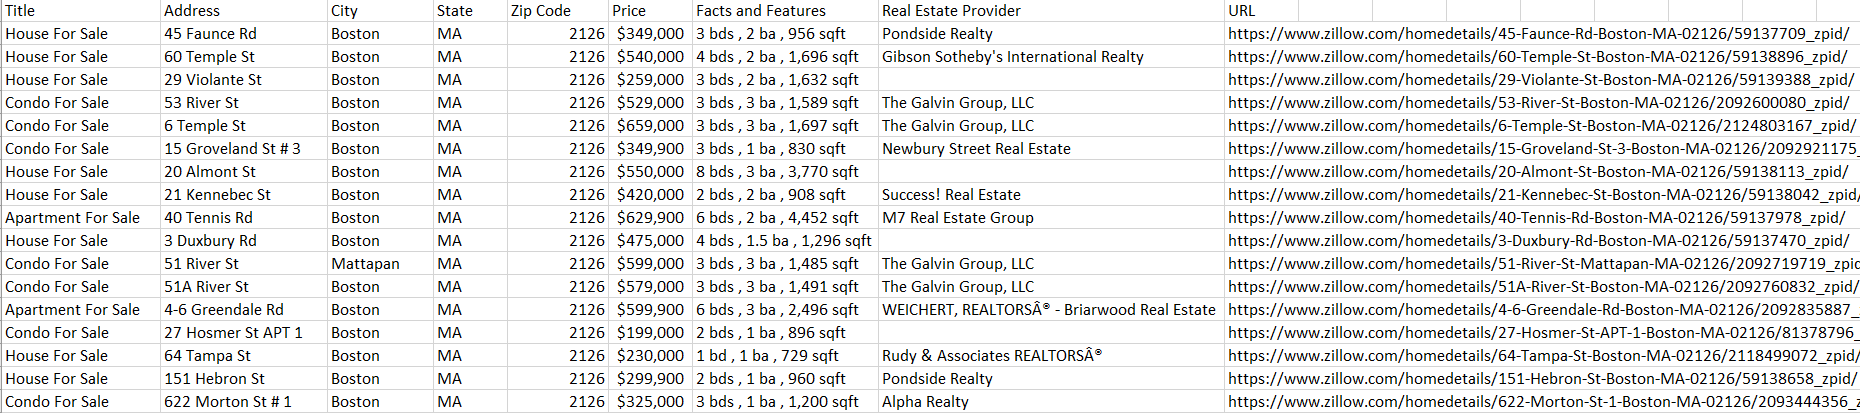 scrape-real-estate-listings